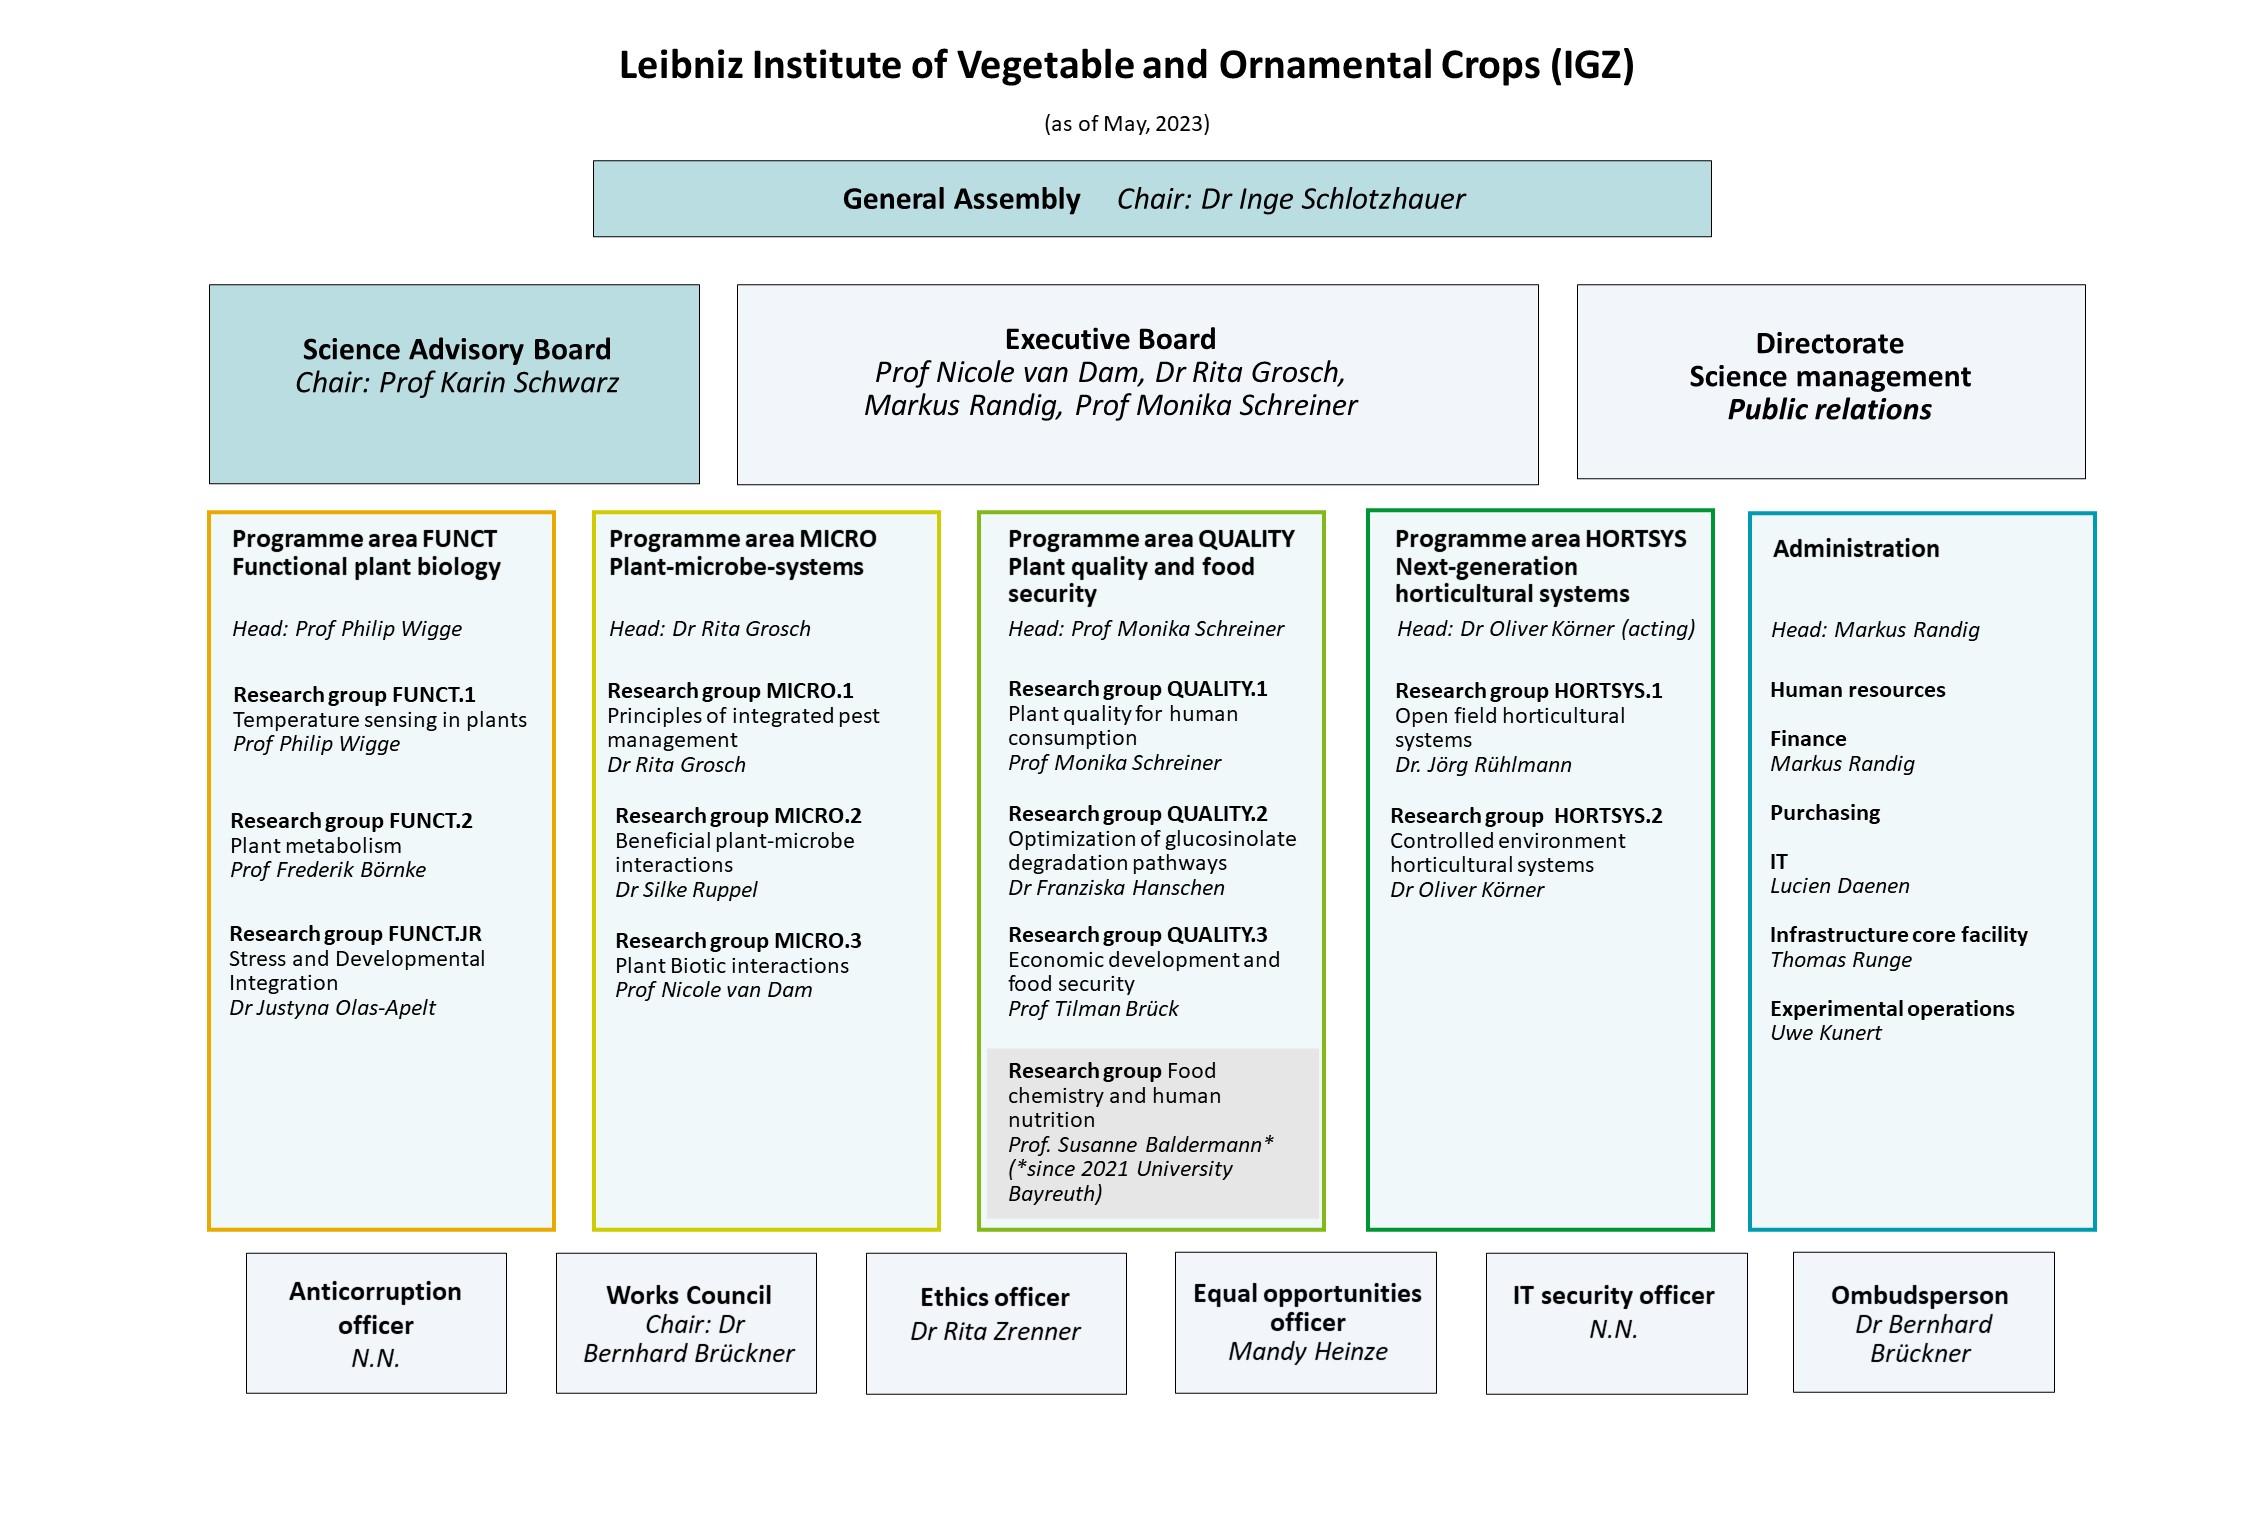 IGZ Organizational chart